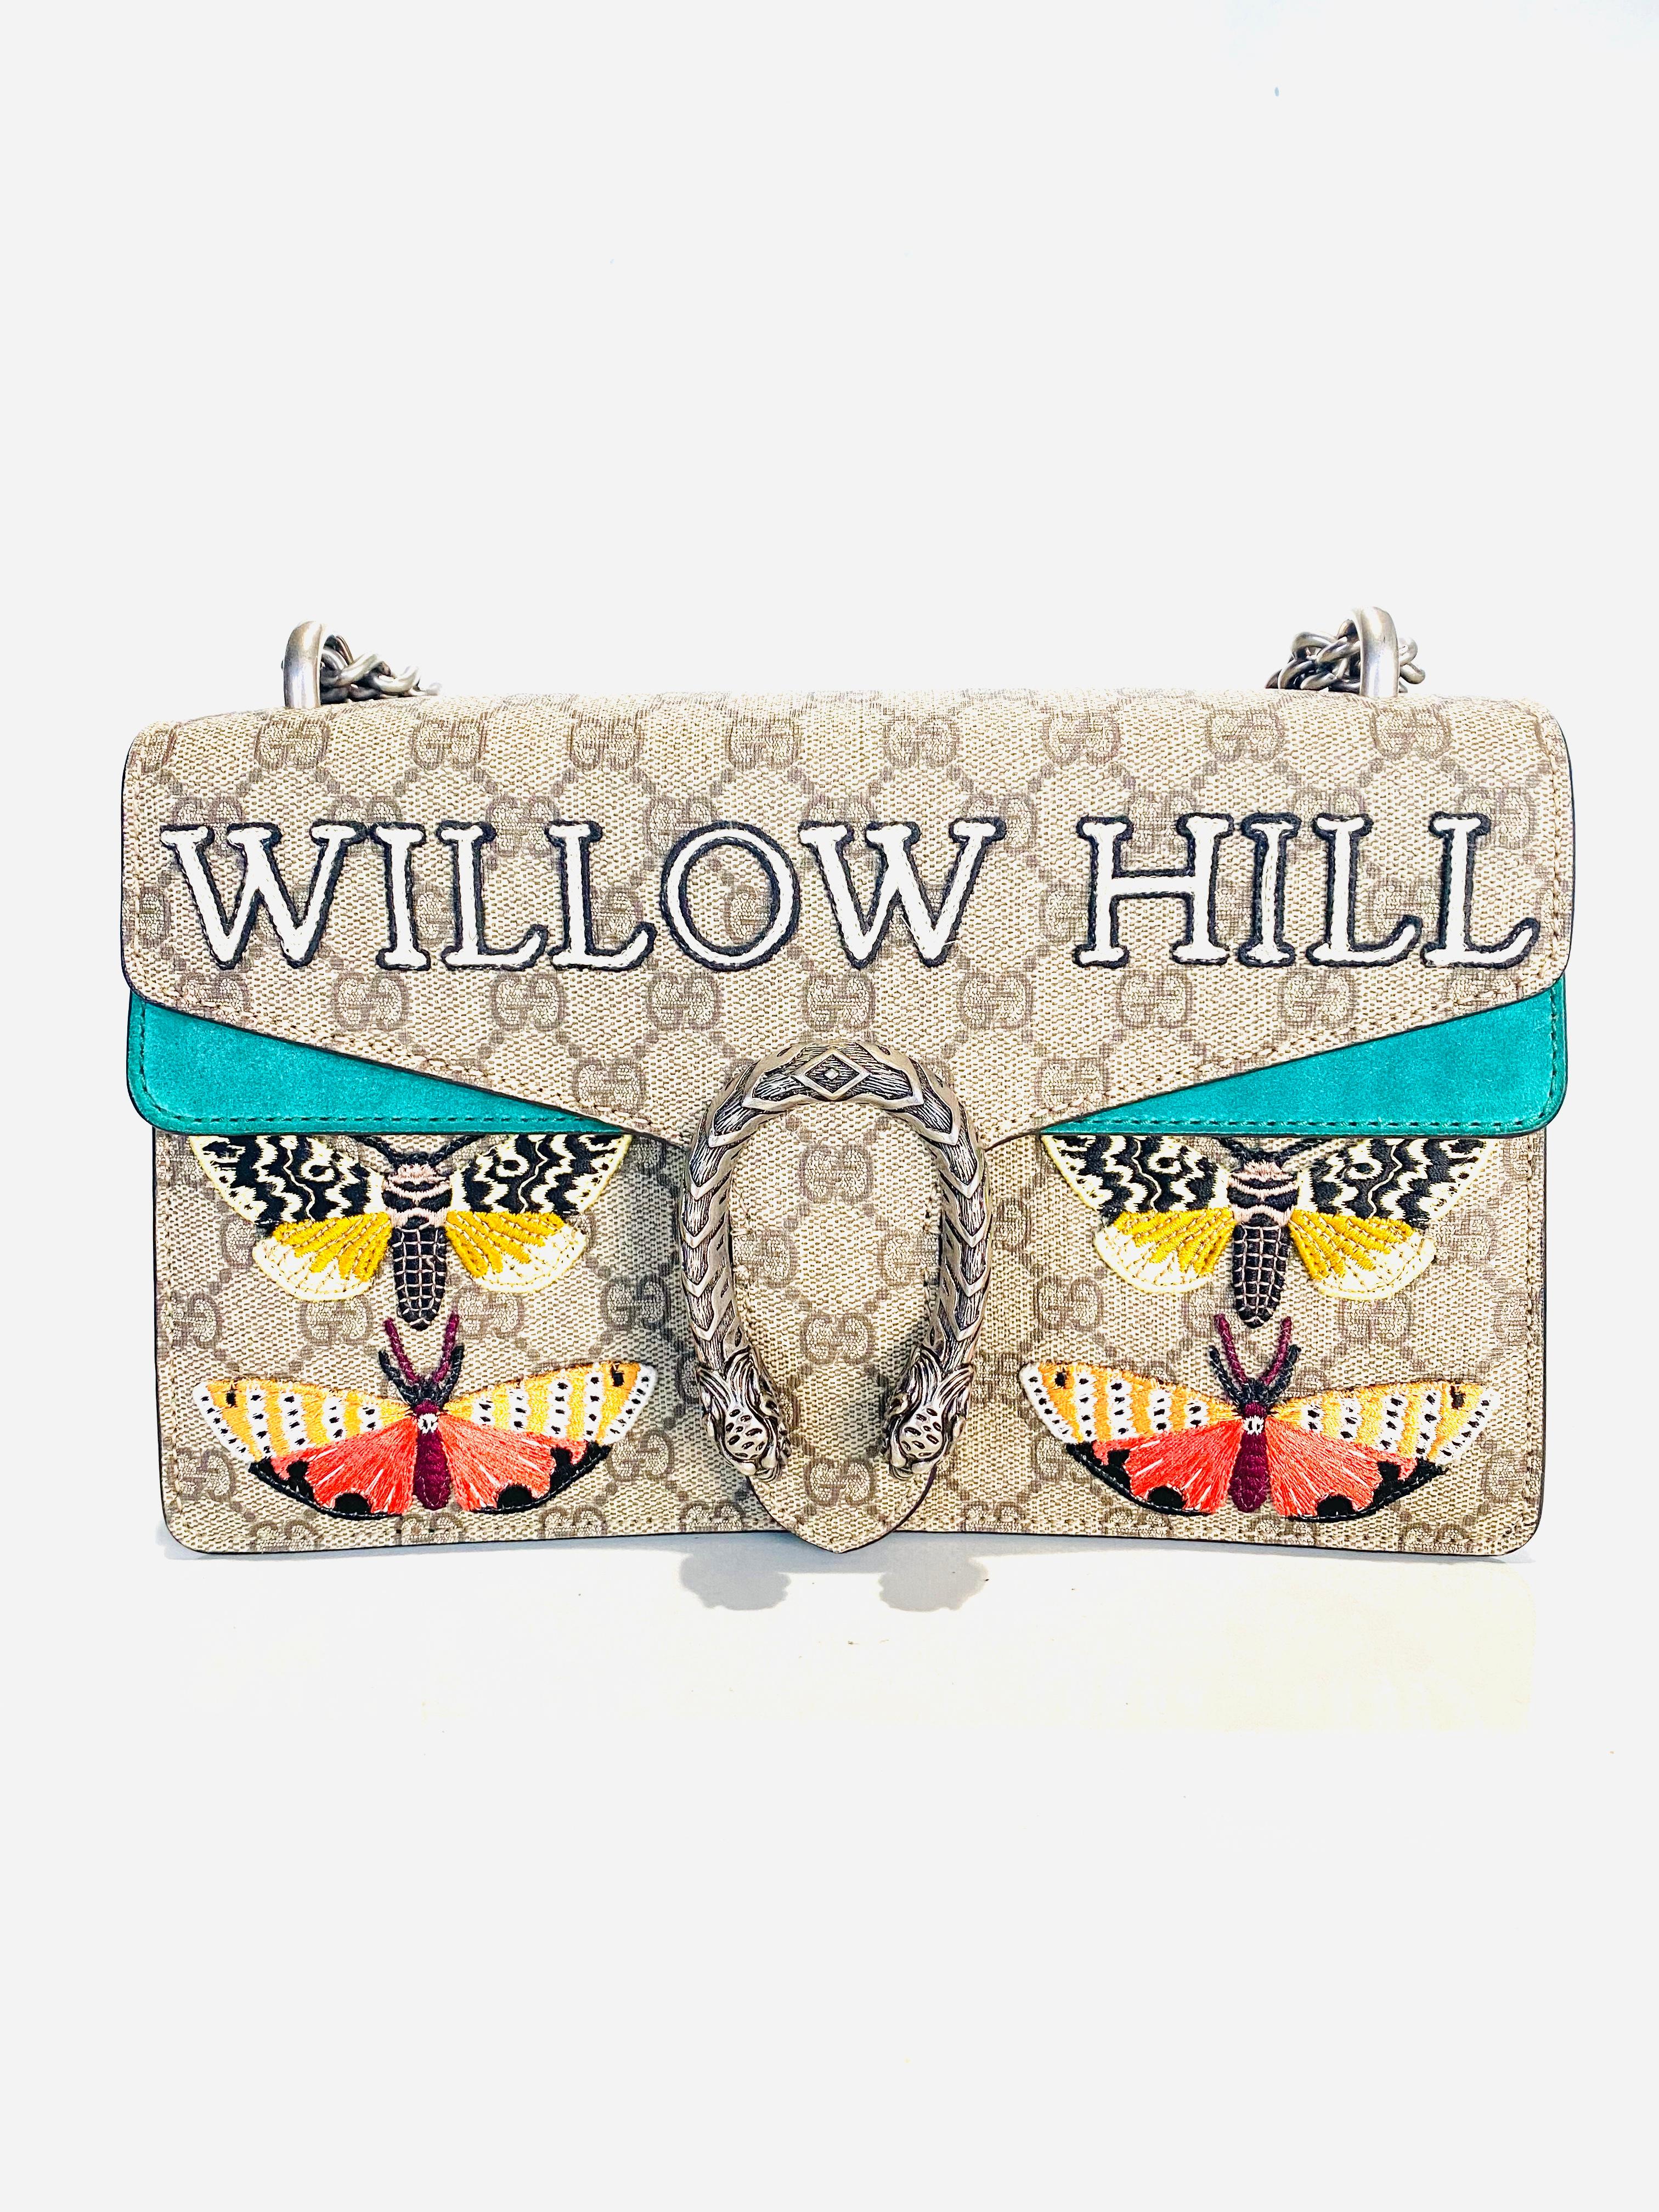 gucci willow hill purse